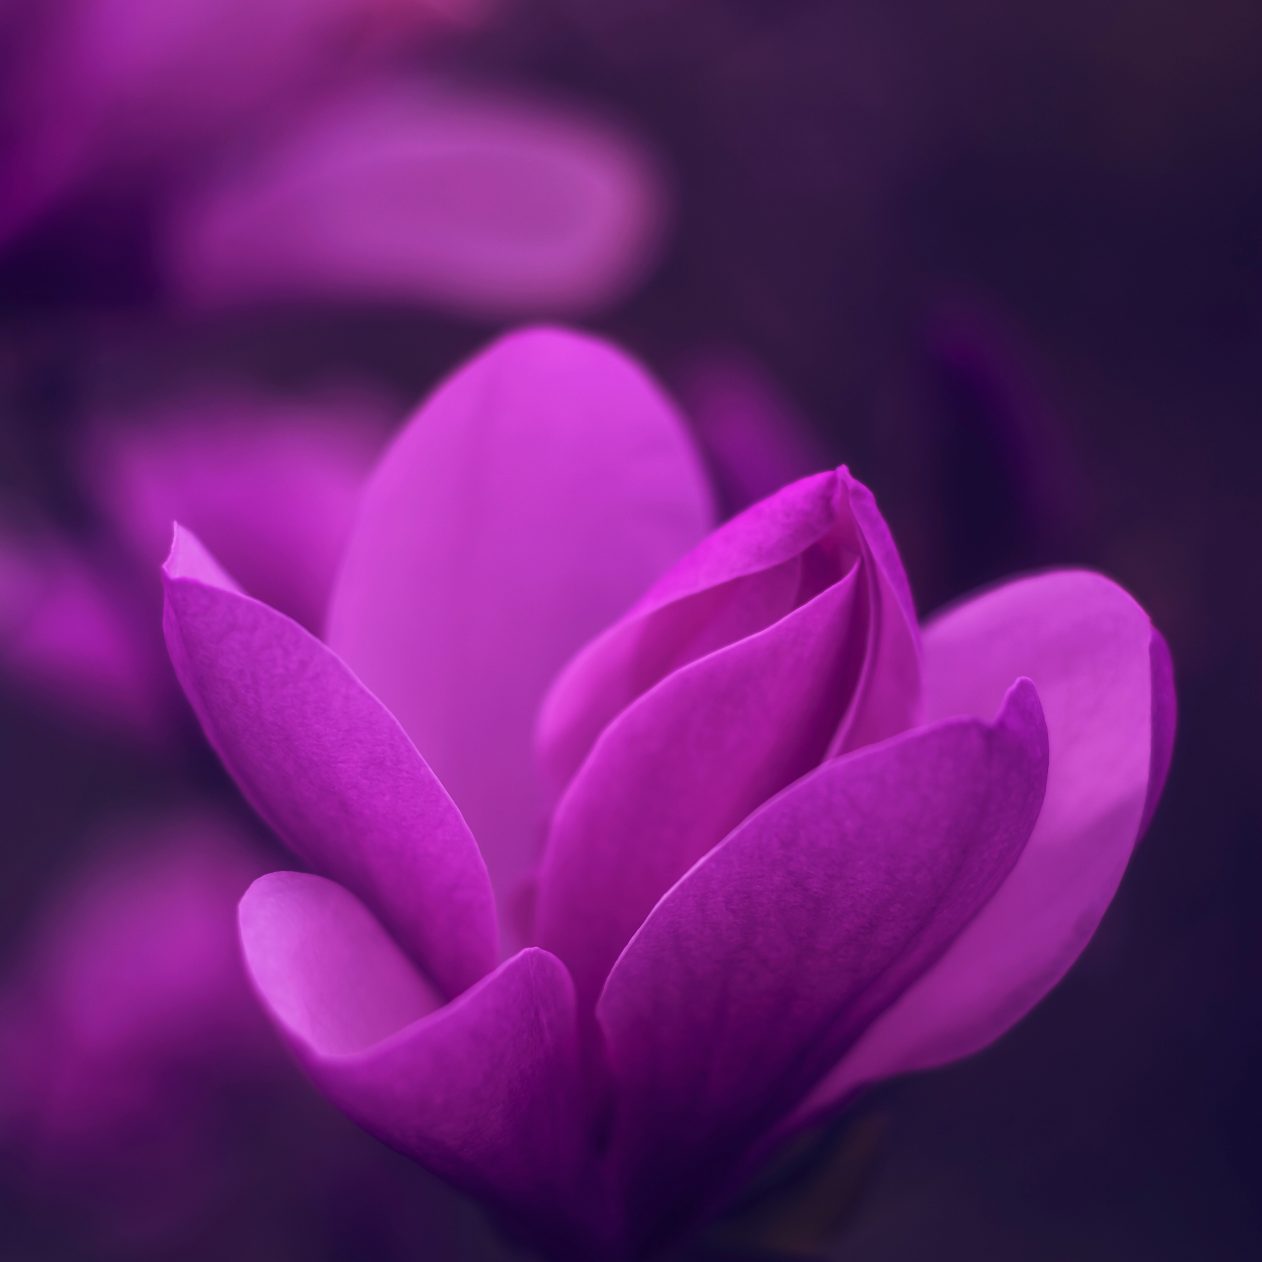 1262x1262 Parallax wallpaper 4k Purple Bloom Blossom Petaled Flower iPad Wallpaper 1262x1262 pixels resolution